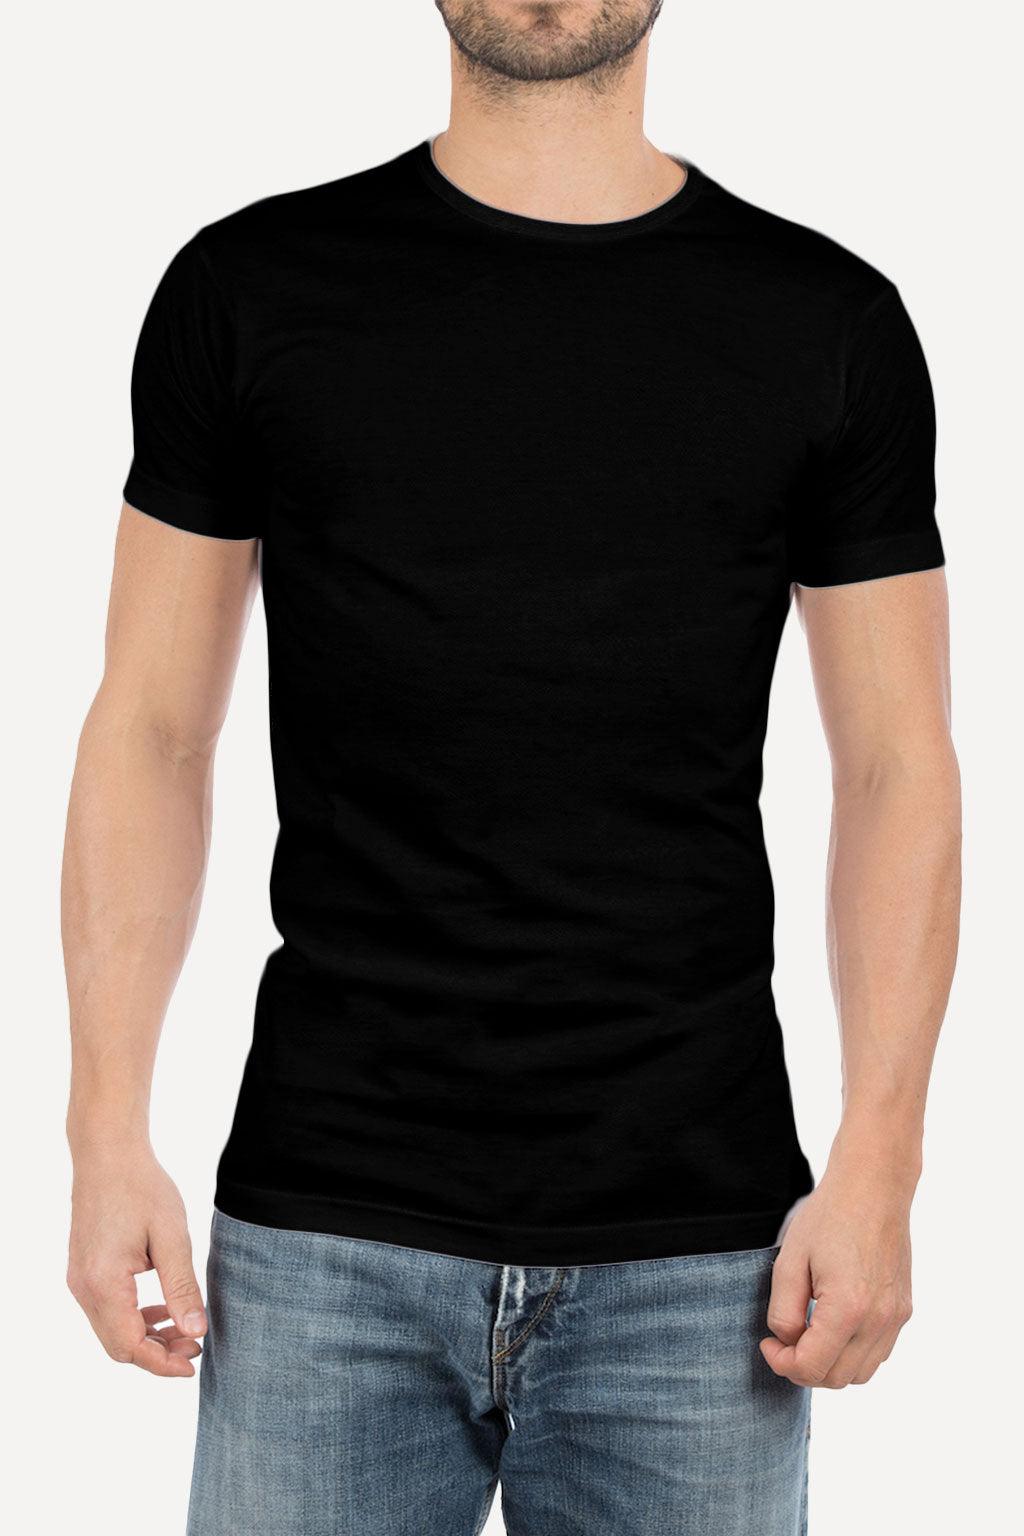 Alan Red regular-fit t-shirt |  Big Boss | the menswear concept.